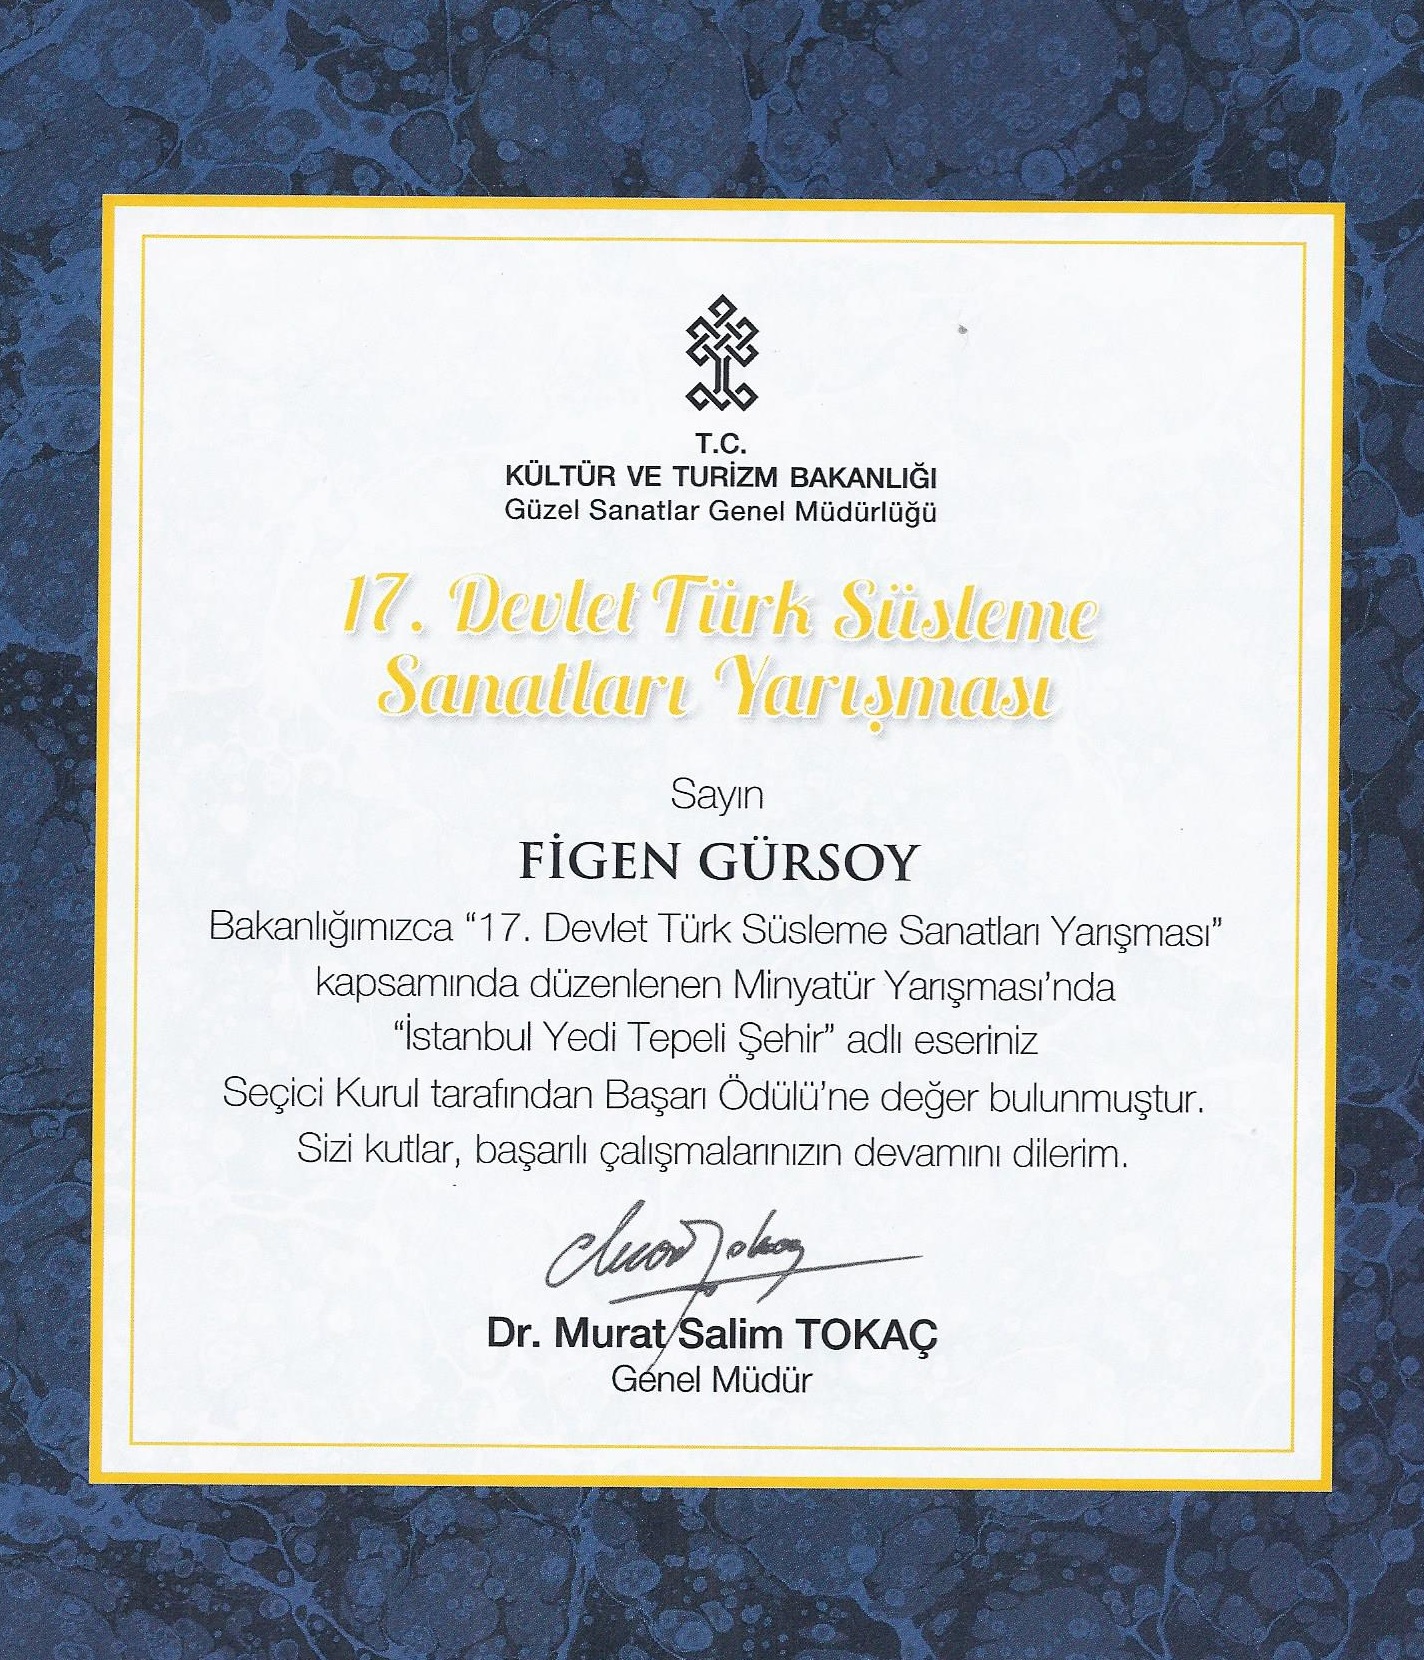 Kültür Bakanlığı Başarı Ödülü, 2013